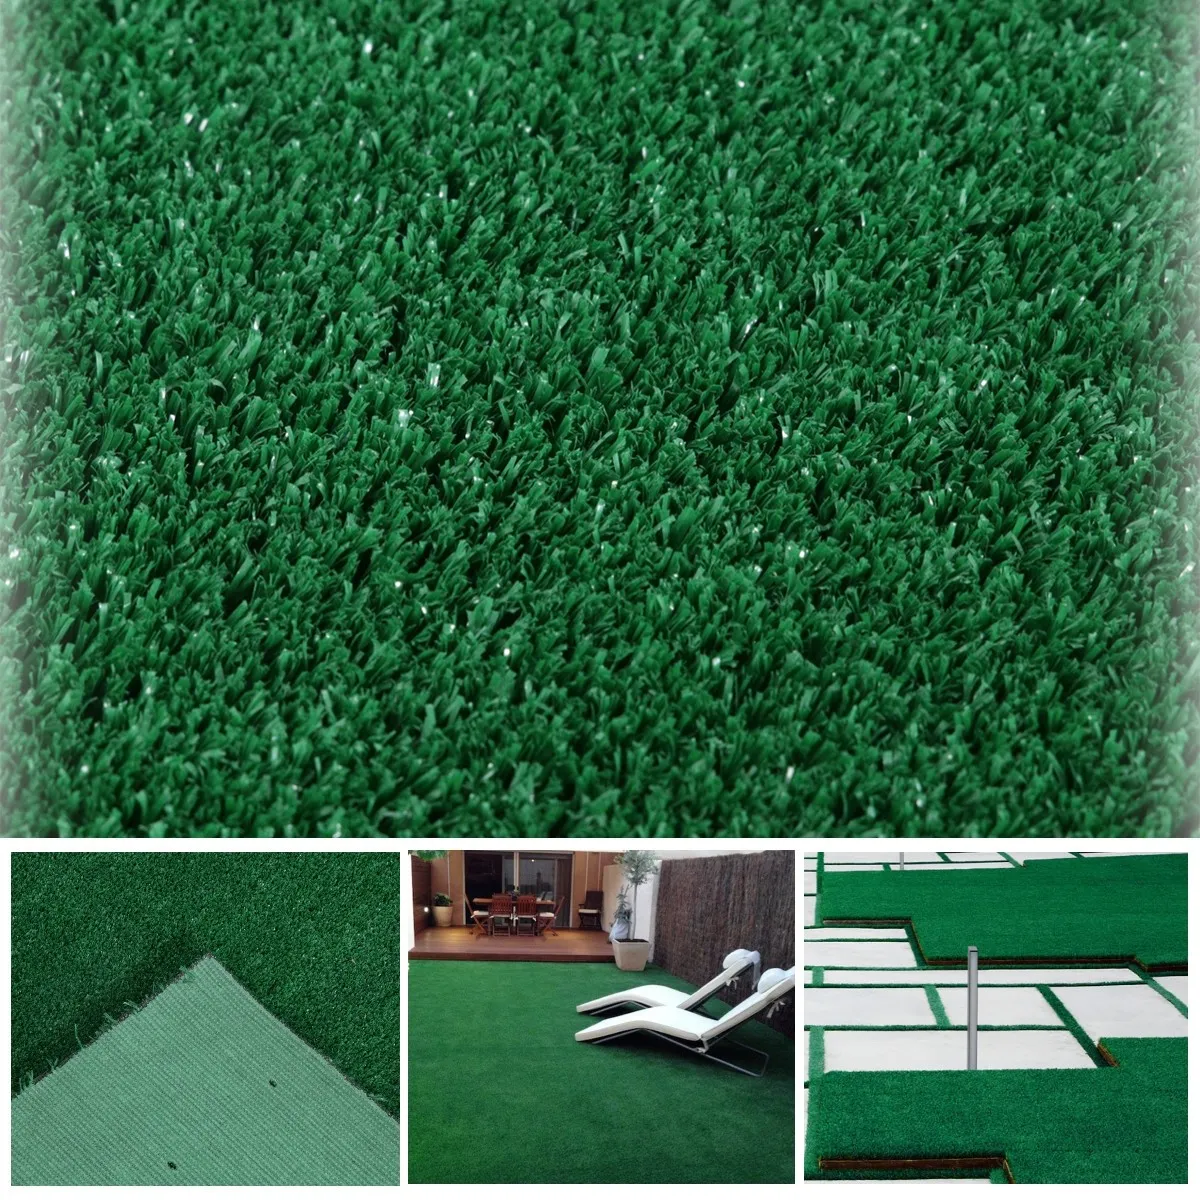 [HOT SALE!] DOHOME หญ้าเทียม 15 มม. 1.00x2.00 เมตร รุ่น L532D สีเขียว  DOHOME เด็กอ่อนและเด็กวัยหัดเดิน ราคาถูก